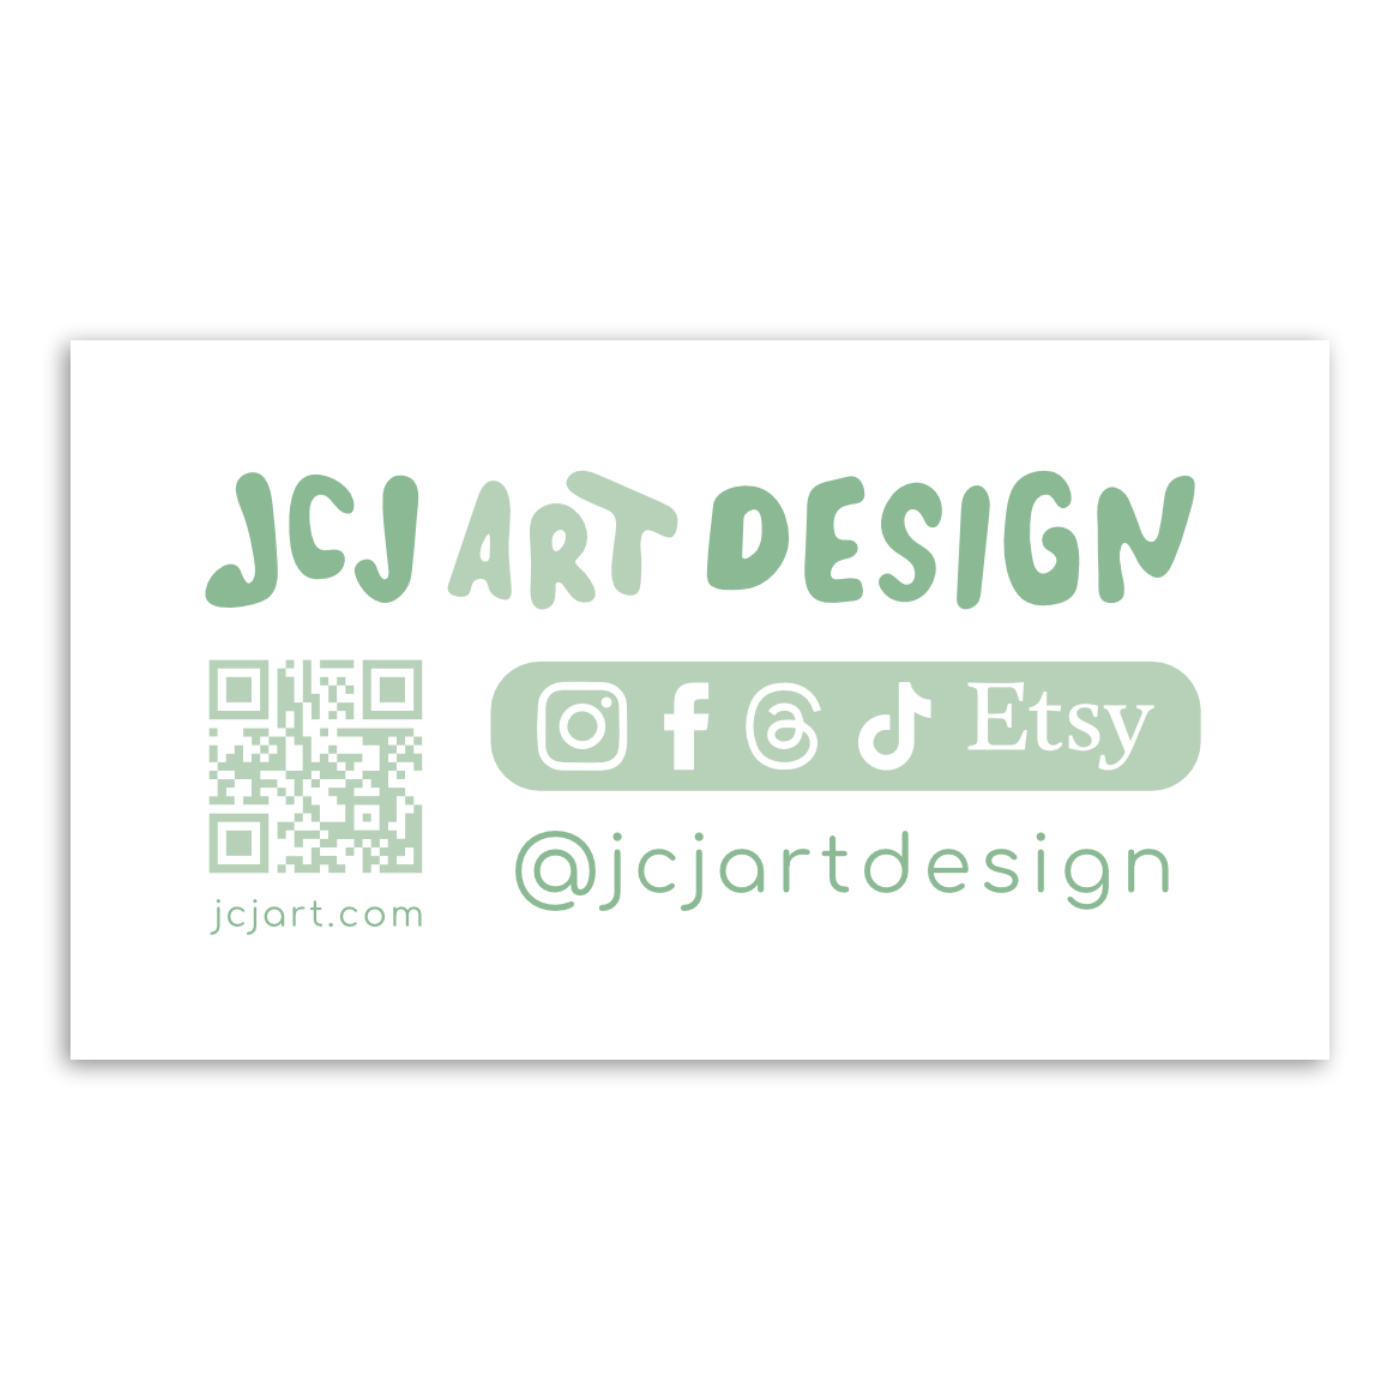 JCJA&D Business Card